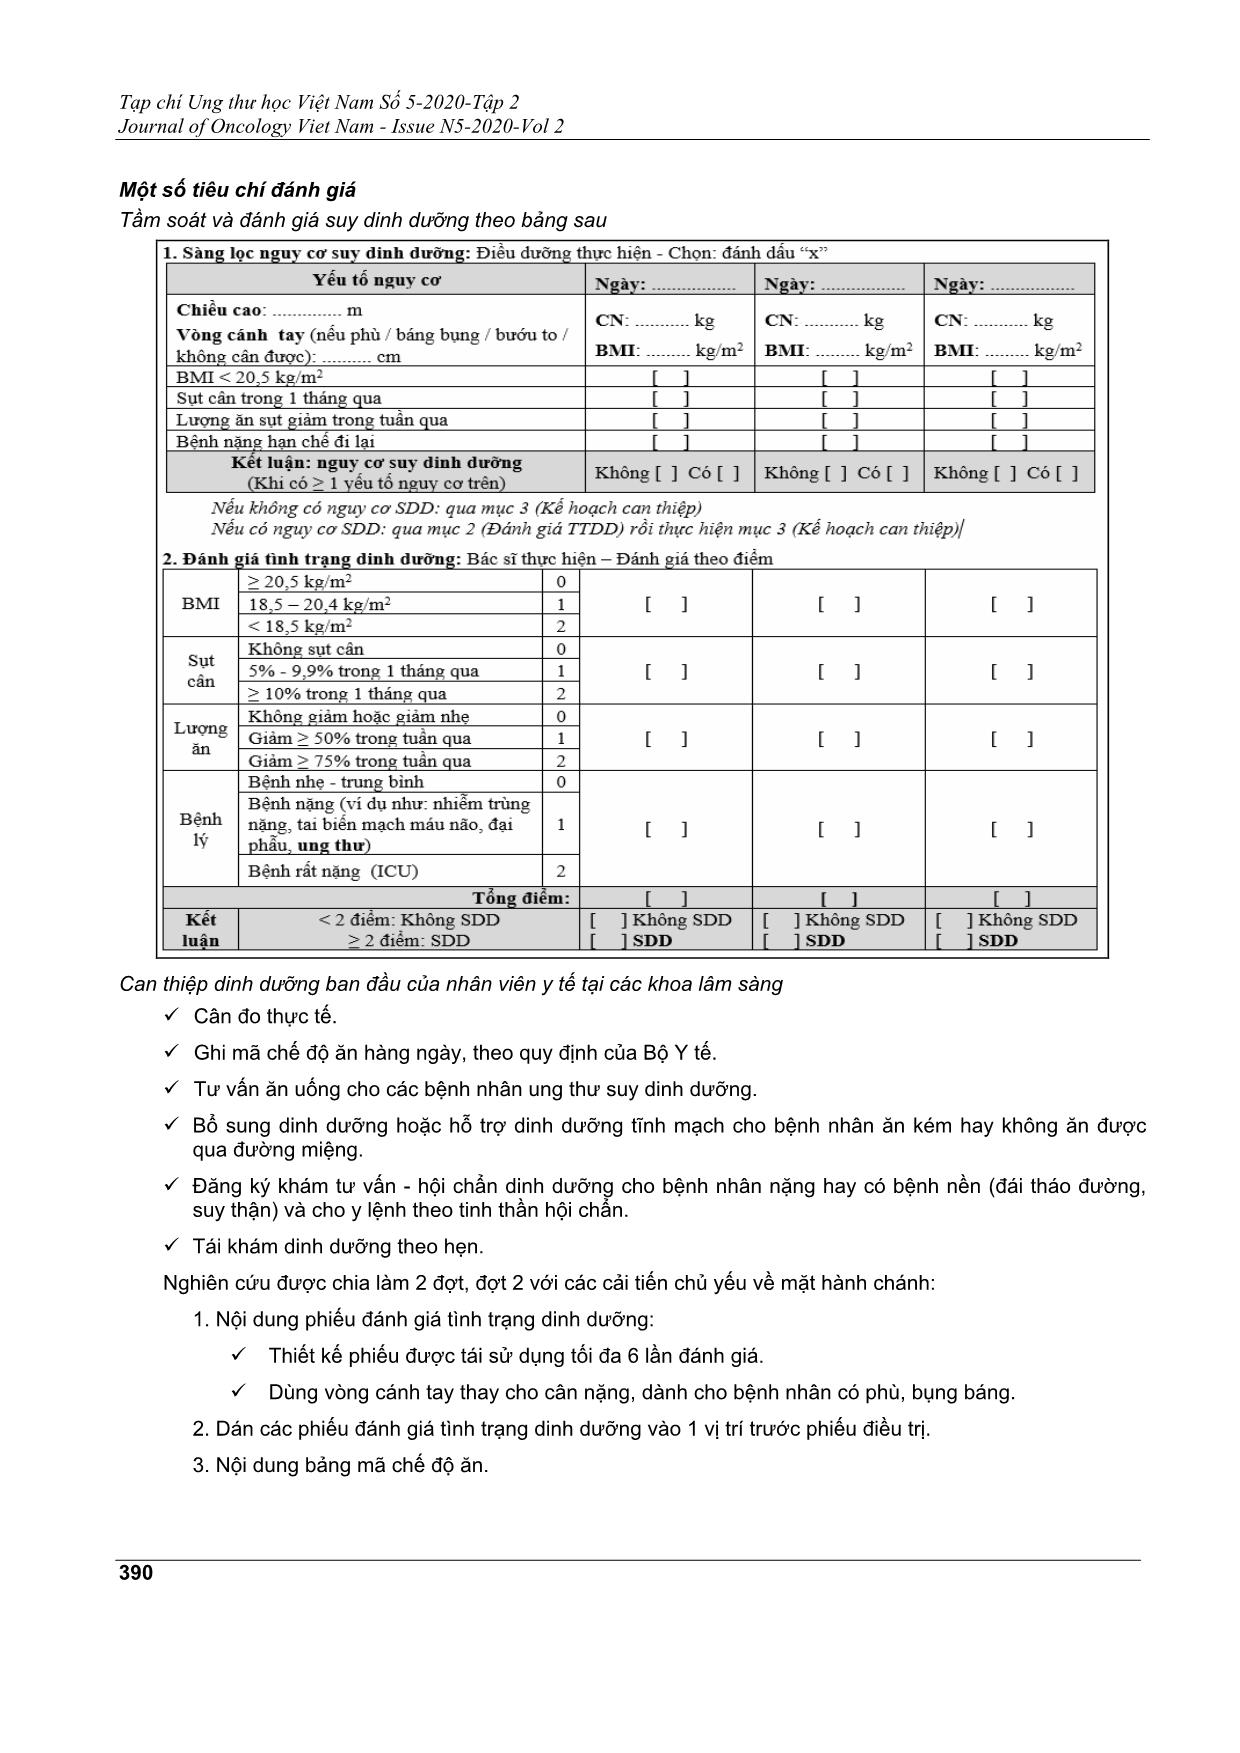 Hiện trạng đánh giá và can thiệp dinh dưỡng trên người bệnh nội trú tại bệnh viện ung bướu TP. Hồ Chí Minh năm 2020 trang 3